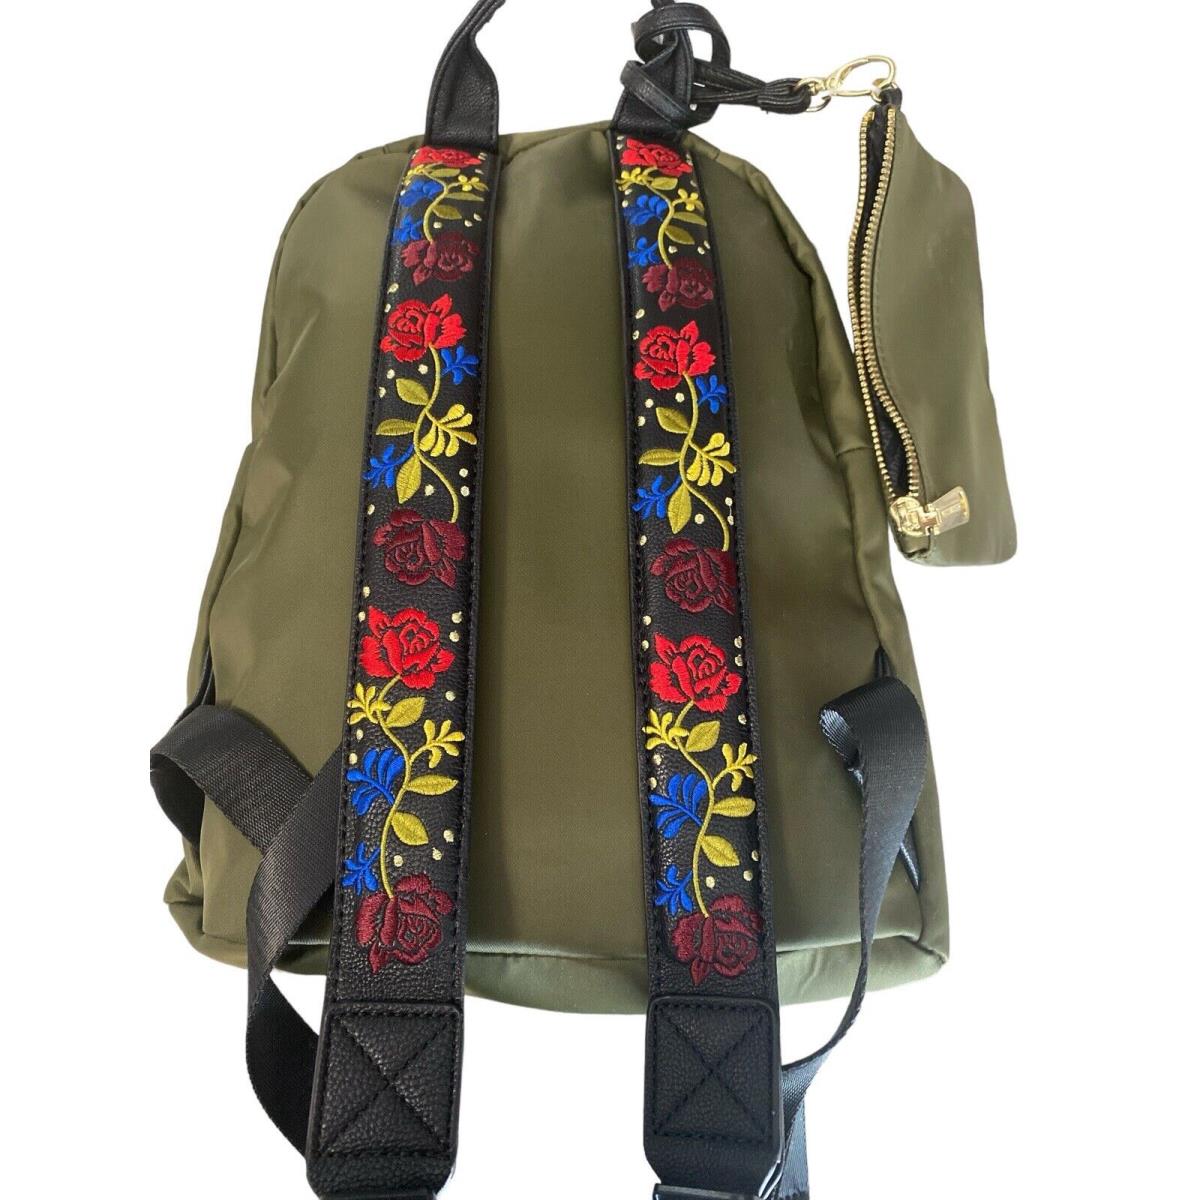 Steve Madden Backpack/purse Green Olive Gold Hardware